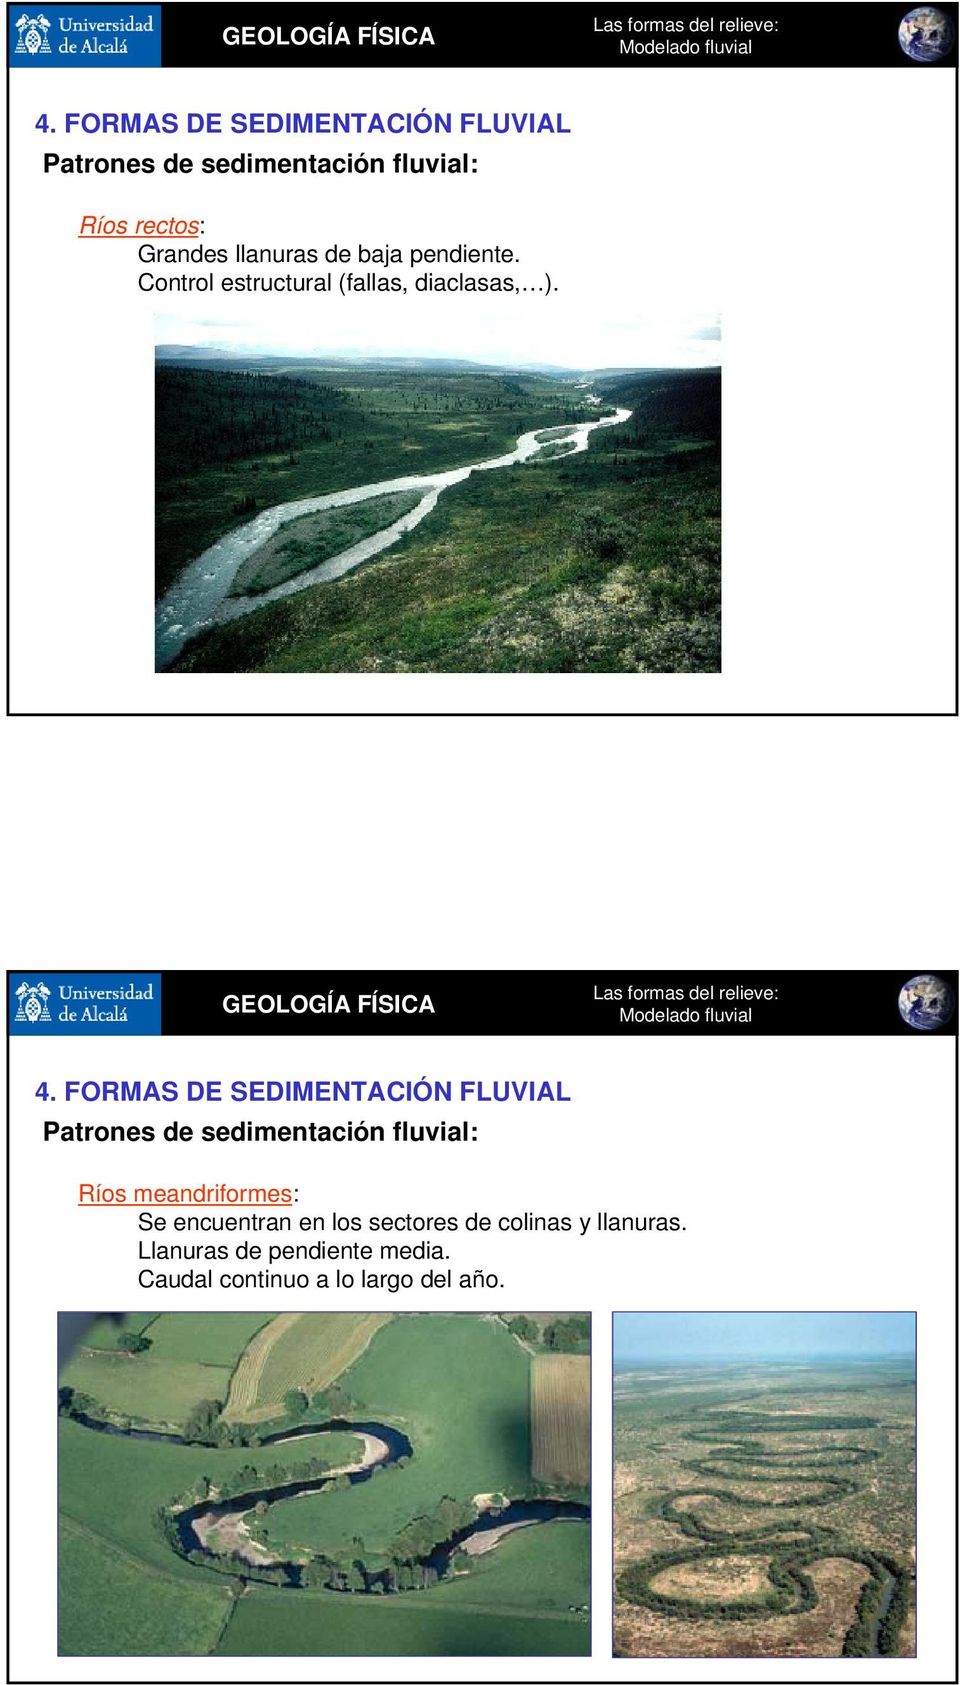 Patrones de sedimentación fluvial: Ríos meandriformes: Se encuentran en